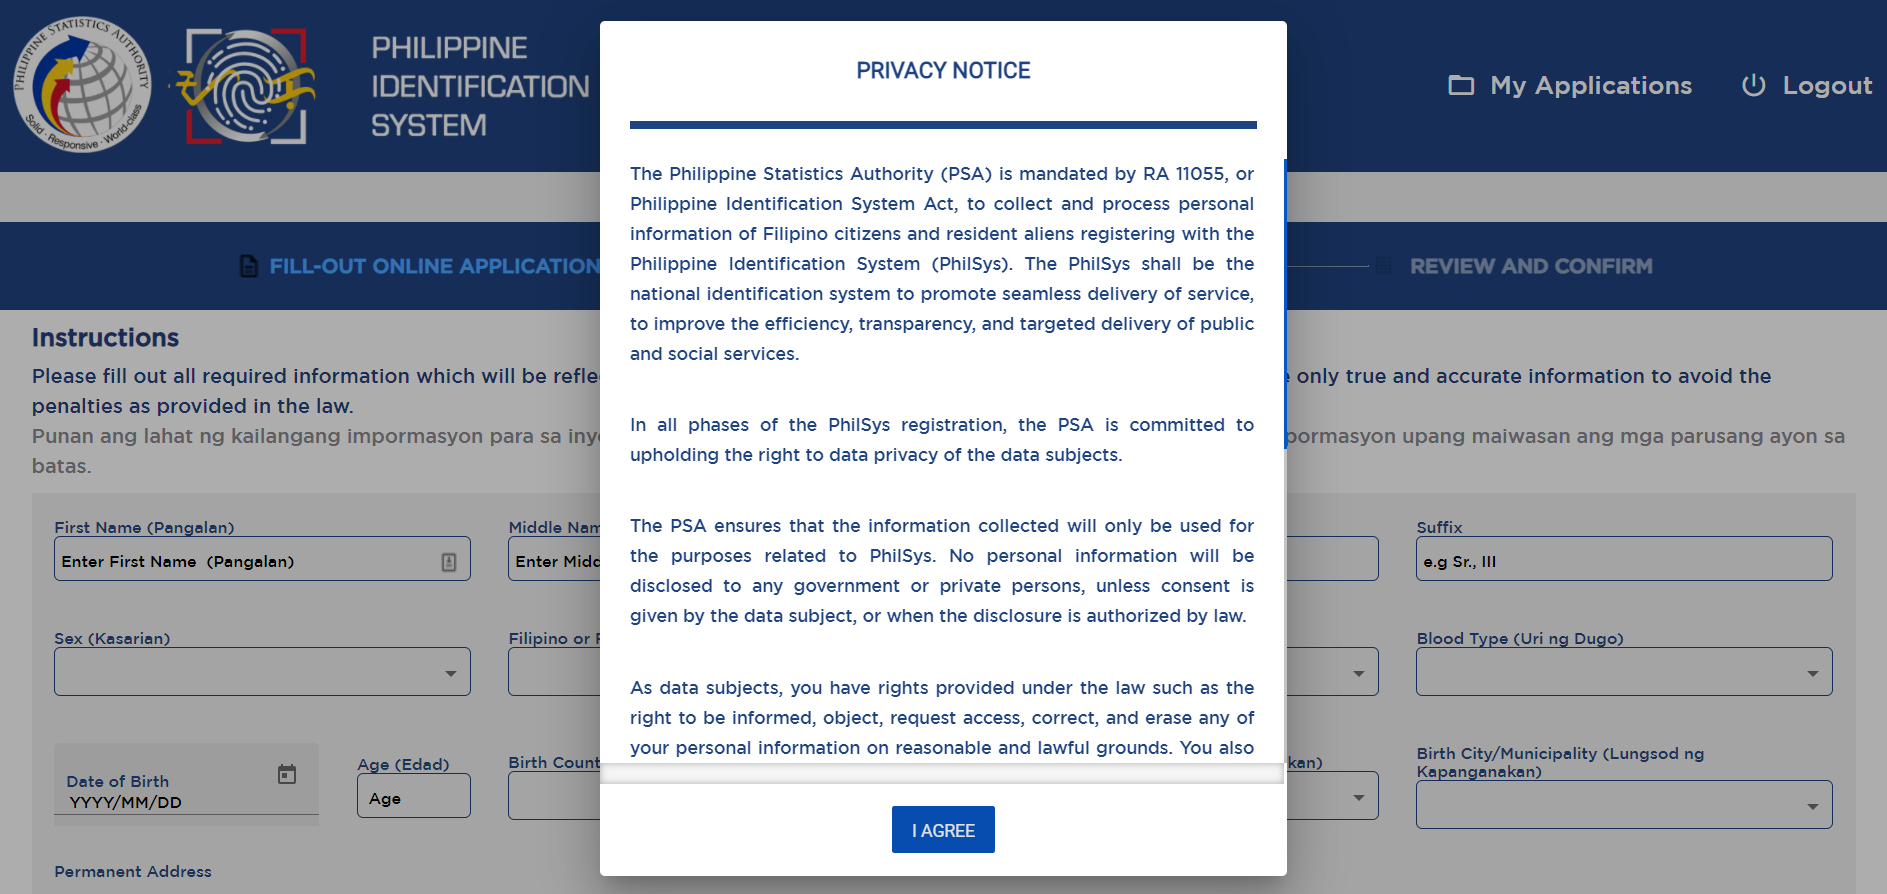 psa-privacy-notice